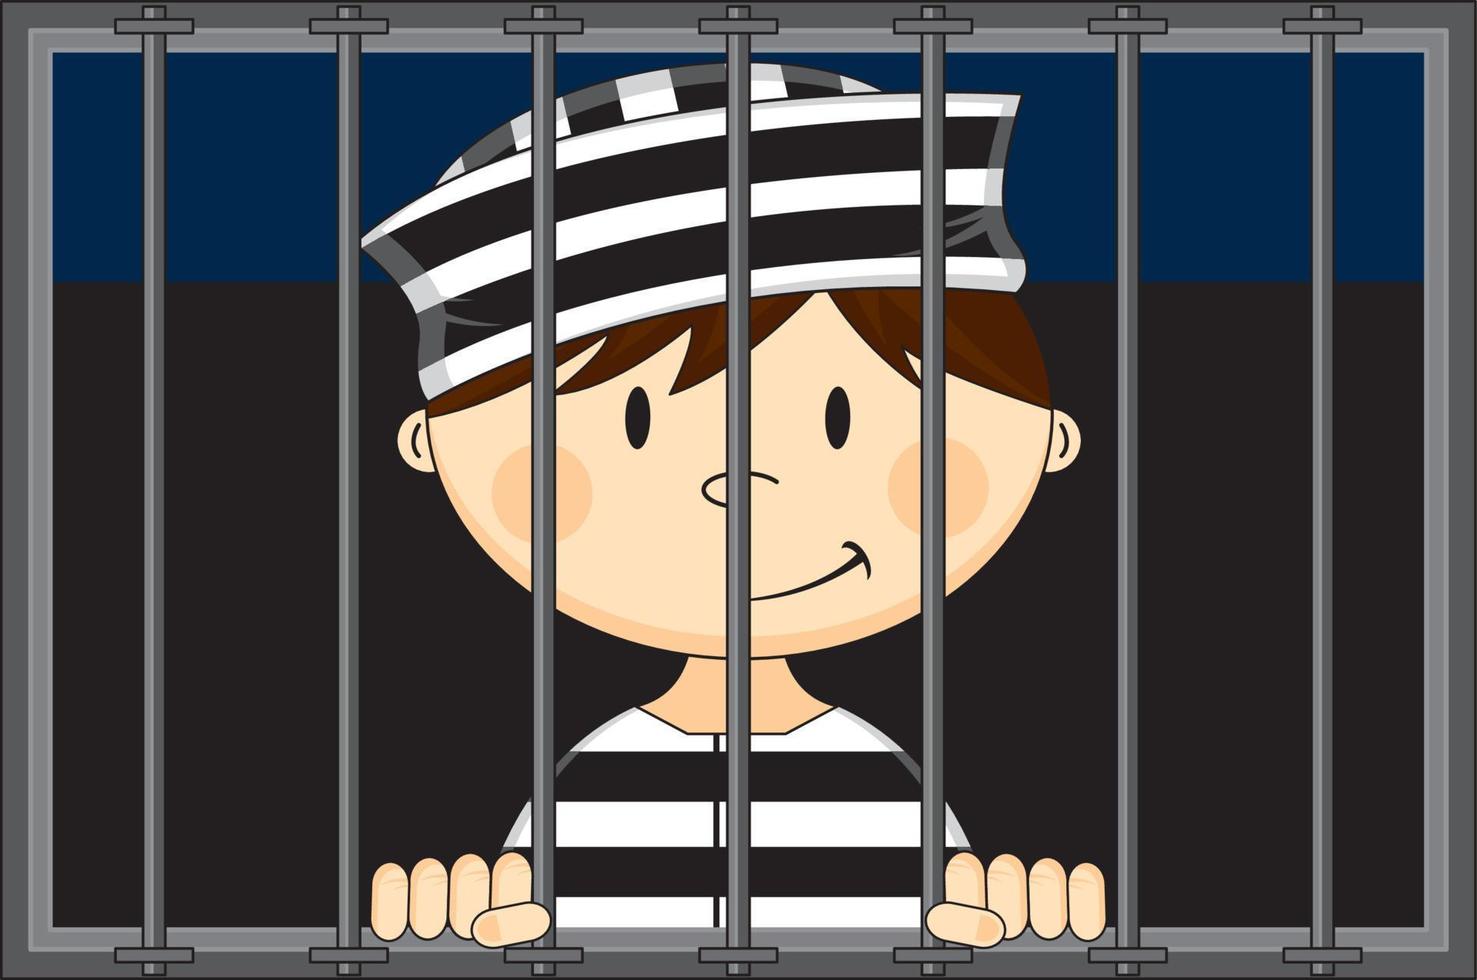 dessin animé prisonnier portant classique rayé prison uniforme dans prison cellule vecteur